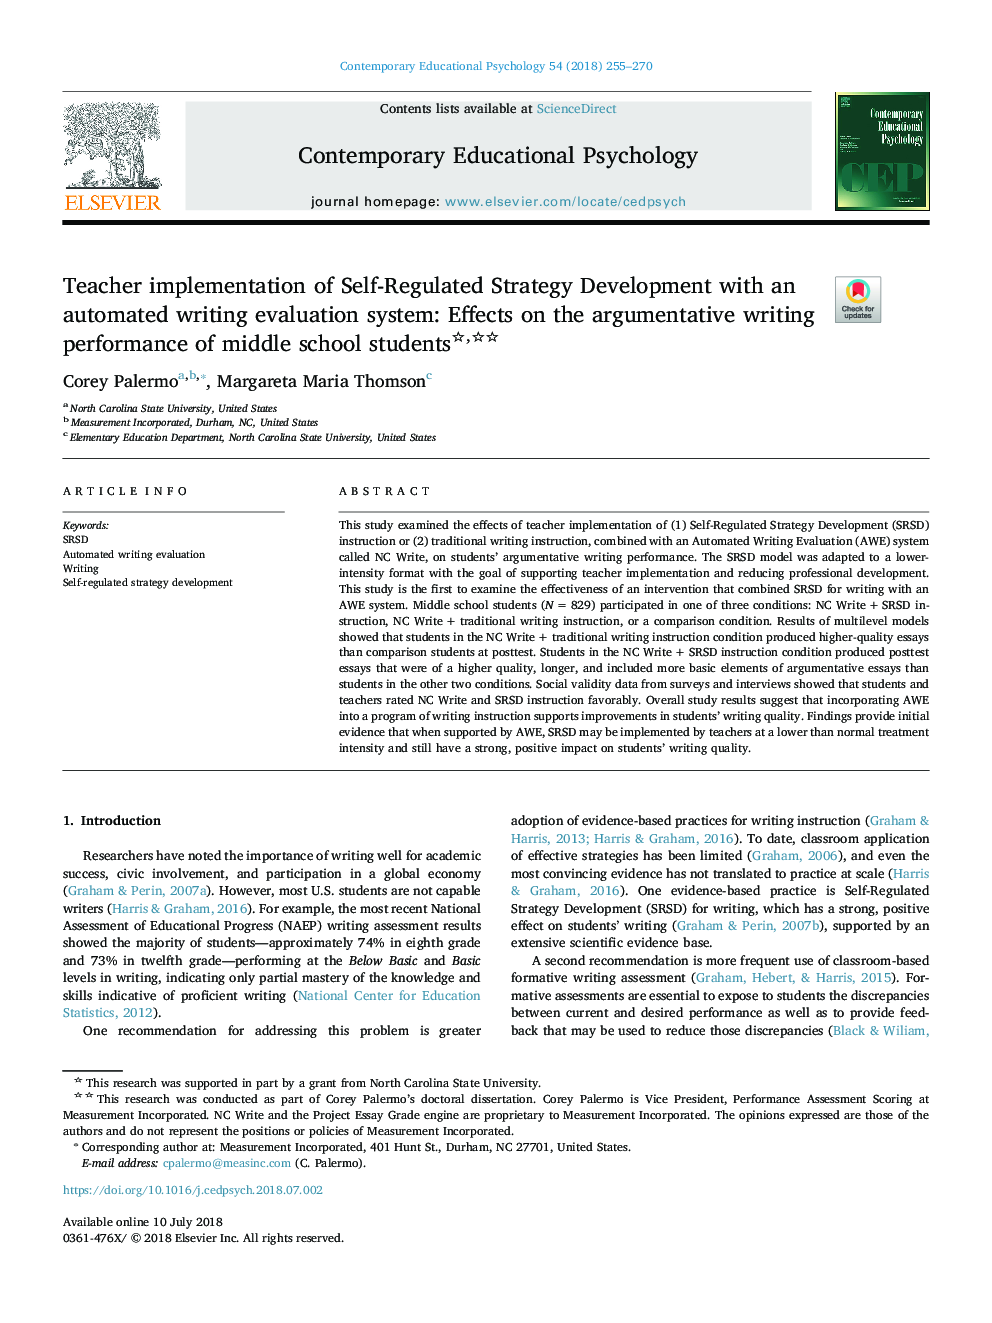 اجرای آموزگار از توسعه استراتژی خود تنظیم شده با سیستم ارزیابی خودکار نوشتاری: تأثیر در عملکرد نوشتاری استدلال دانش آموزان دبیرستان 